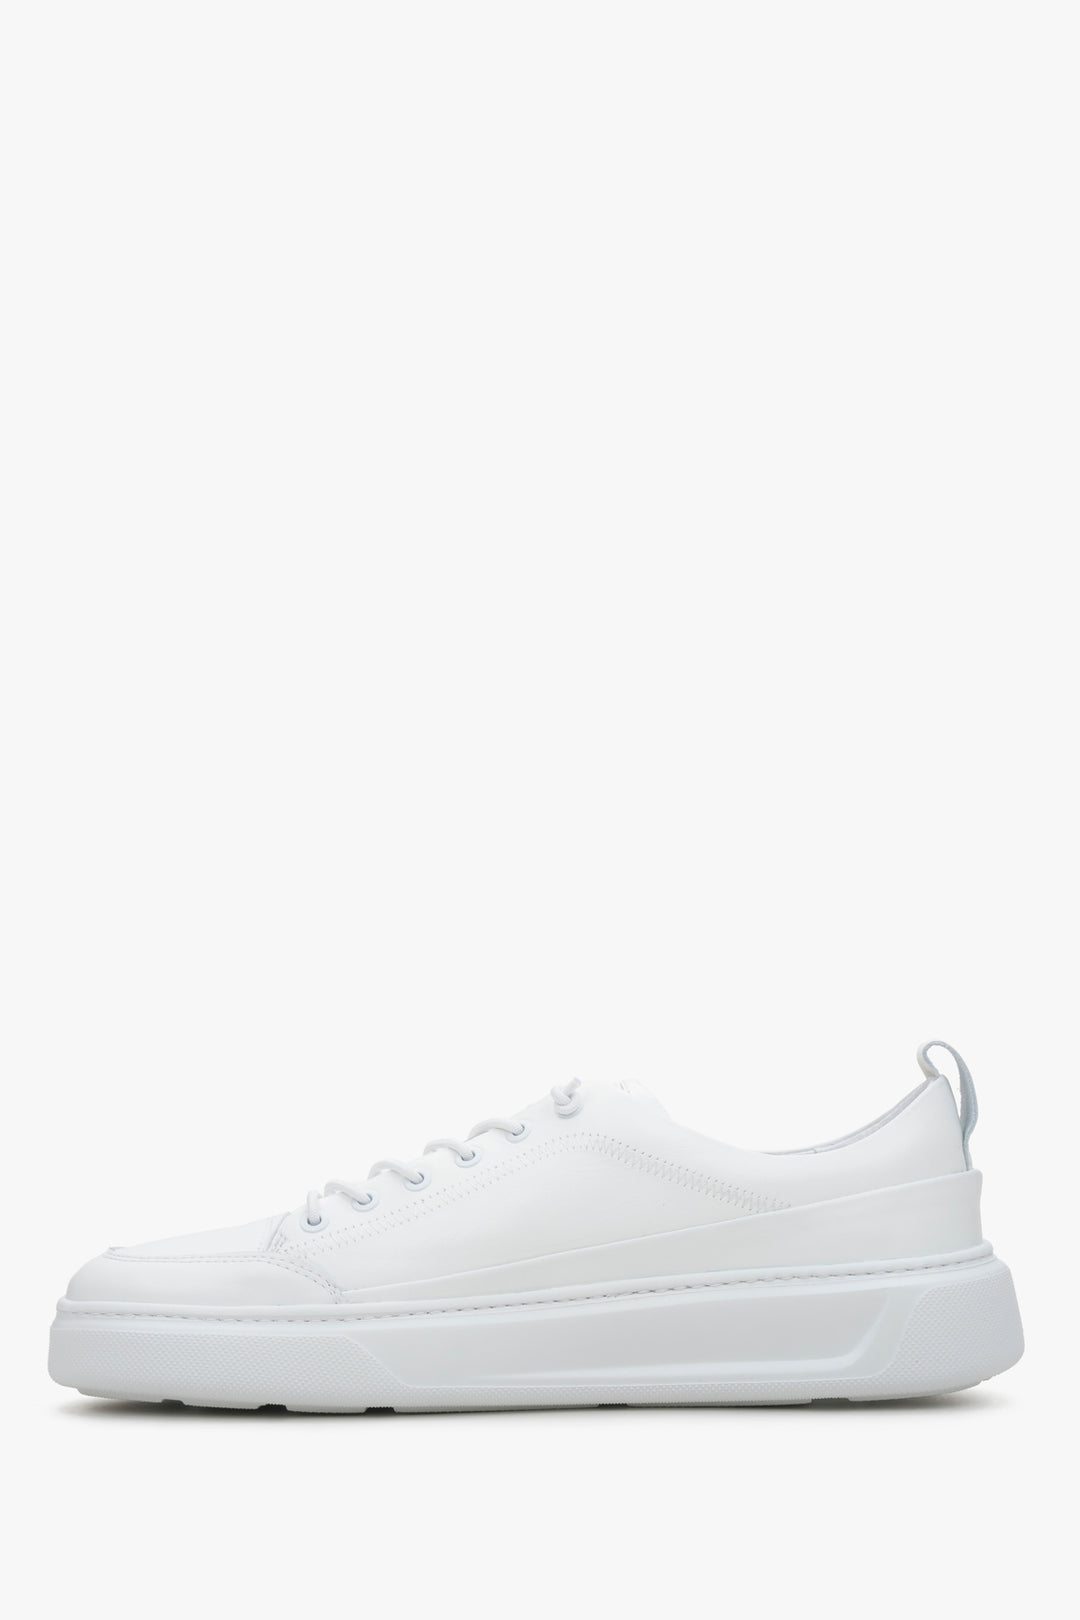 Estro men's sneakers in white colour - shoe profile.